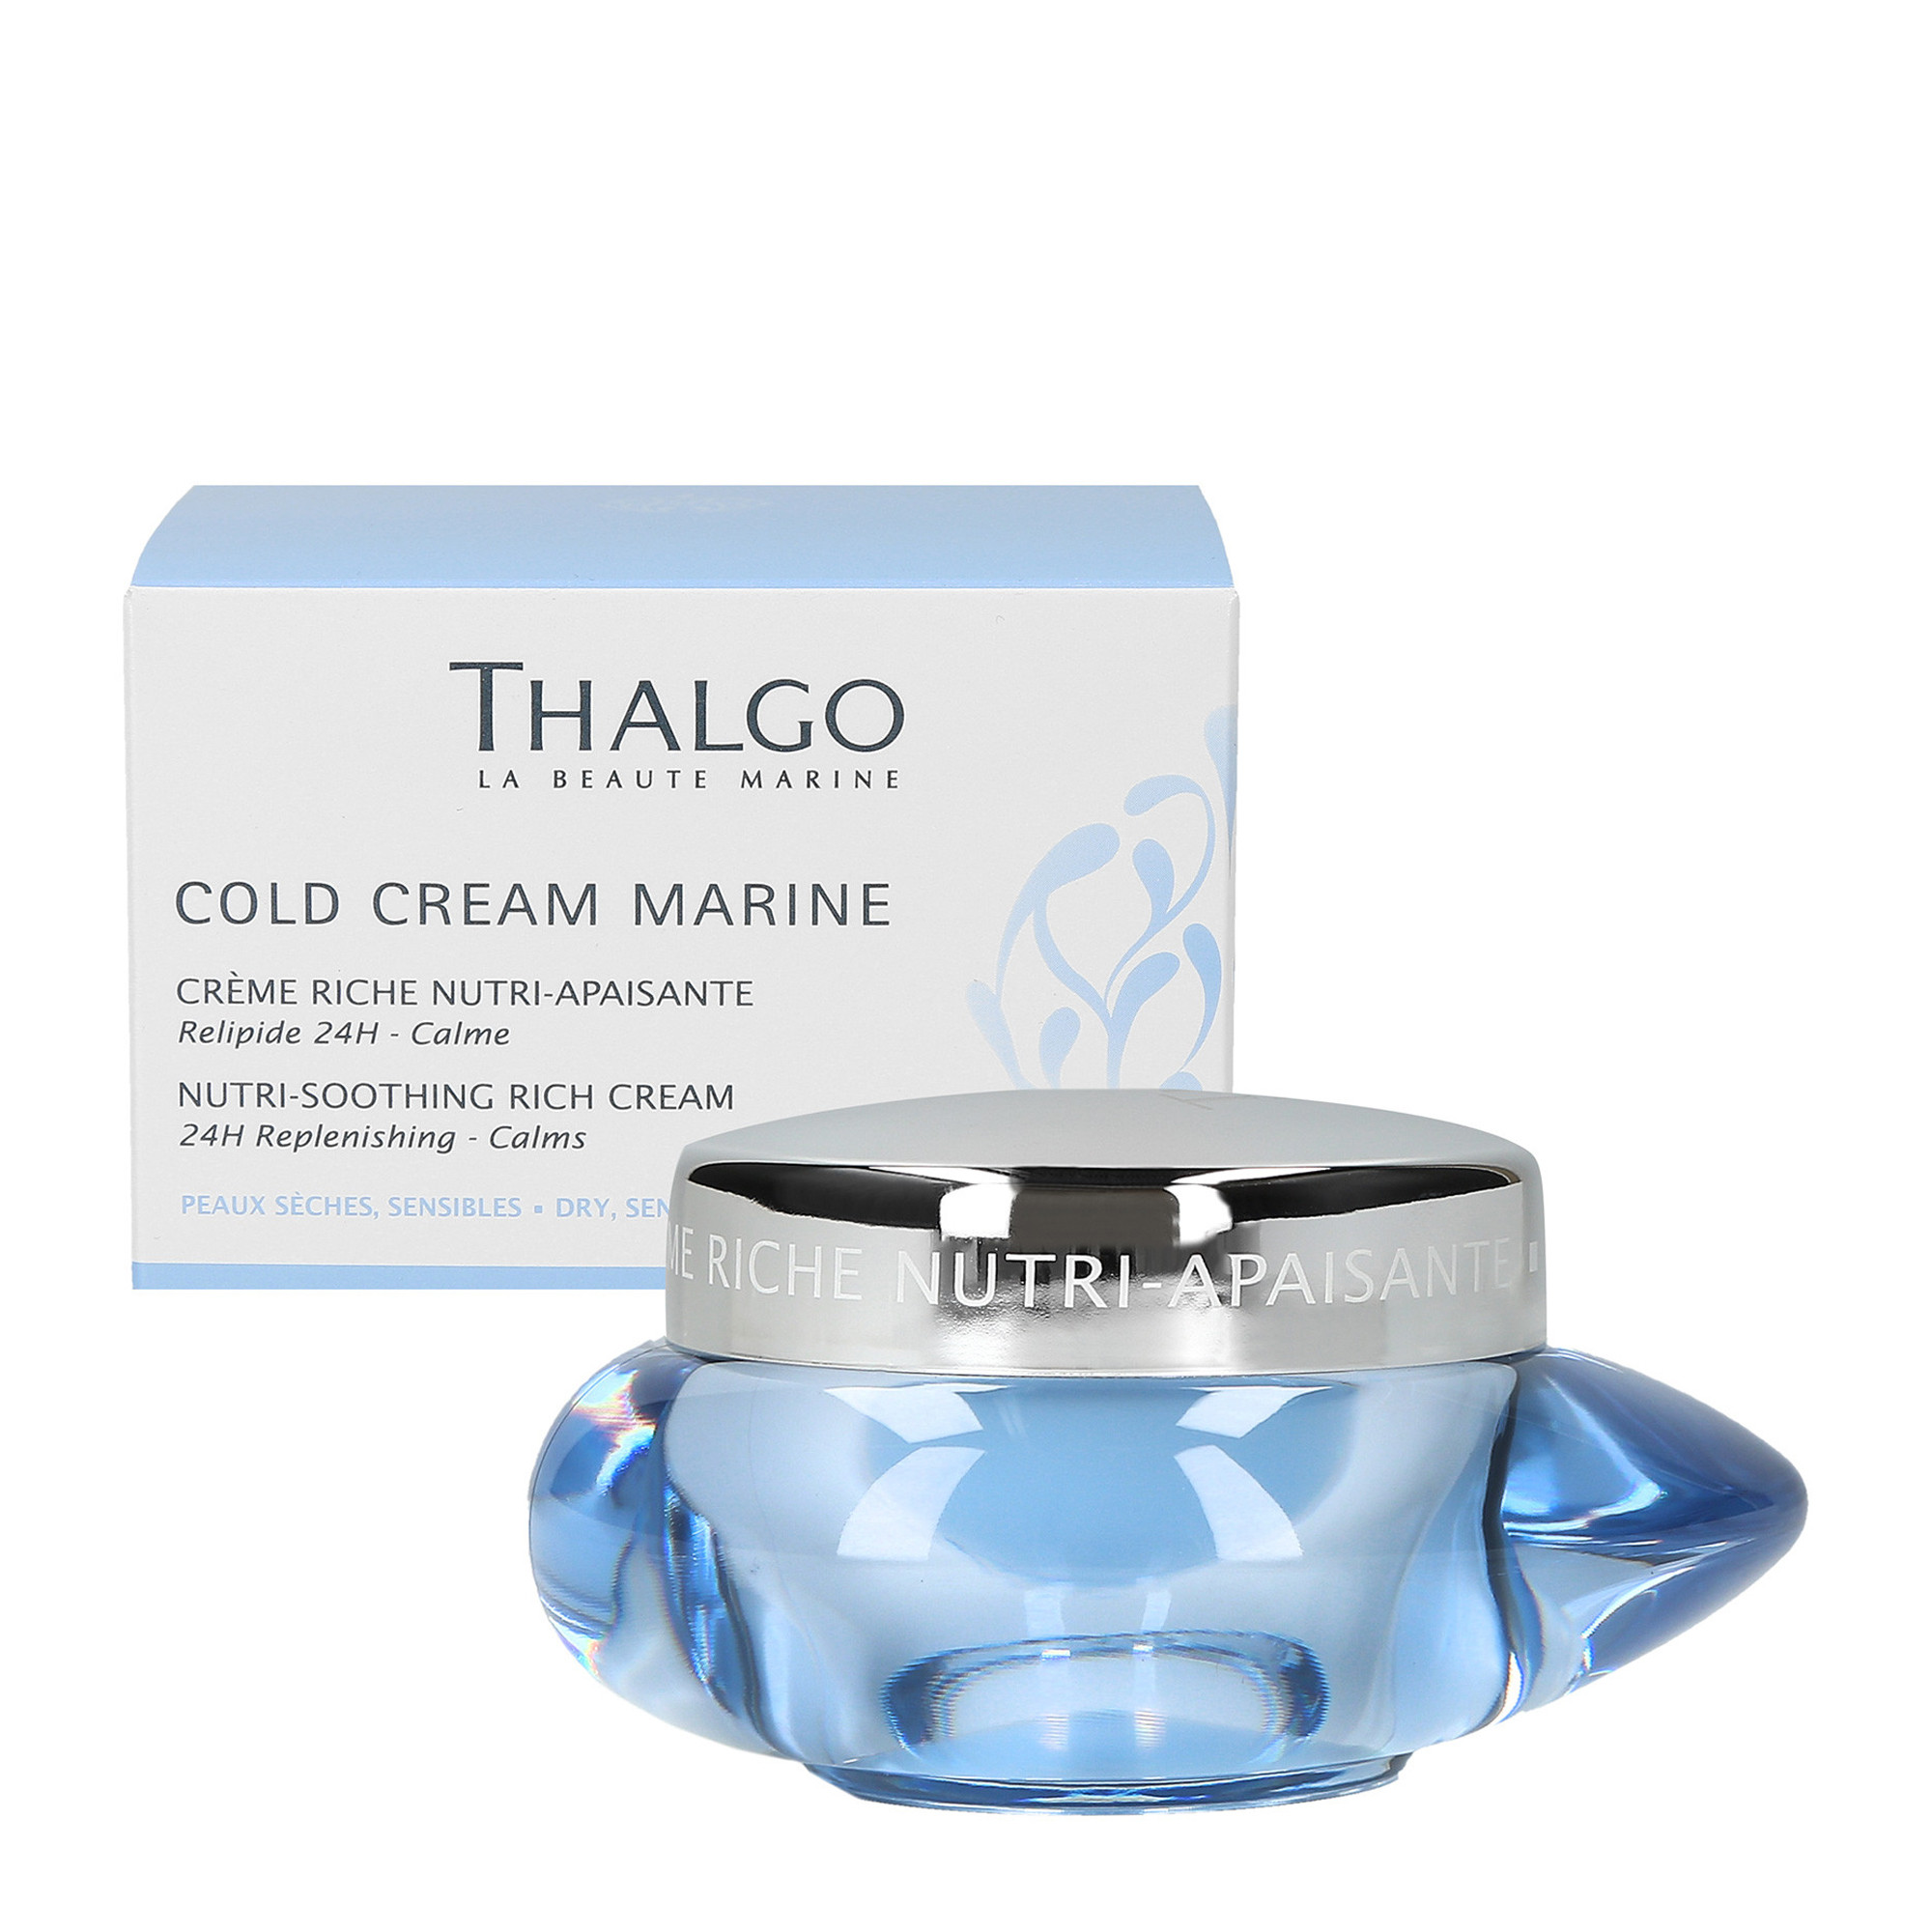 Интенсивный питательно-успокаивающий крем для лица Thalgo Cold Cream Marine Nutri-Soothing Rich Cream